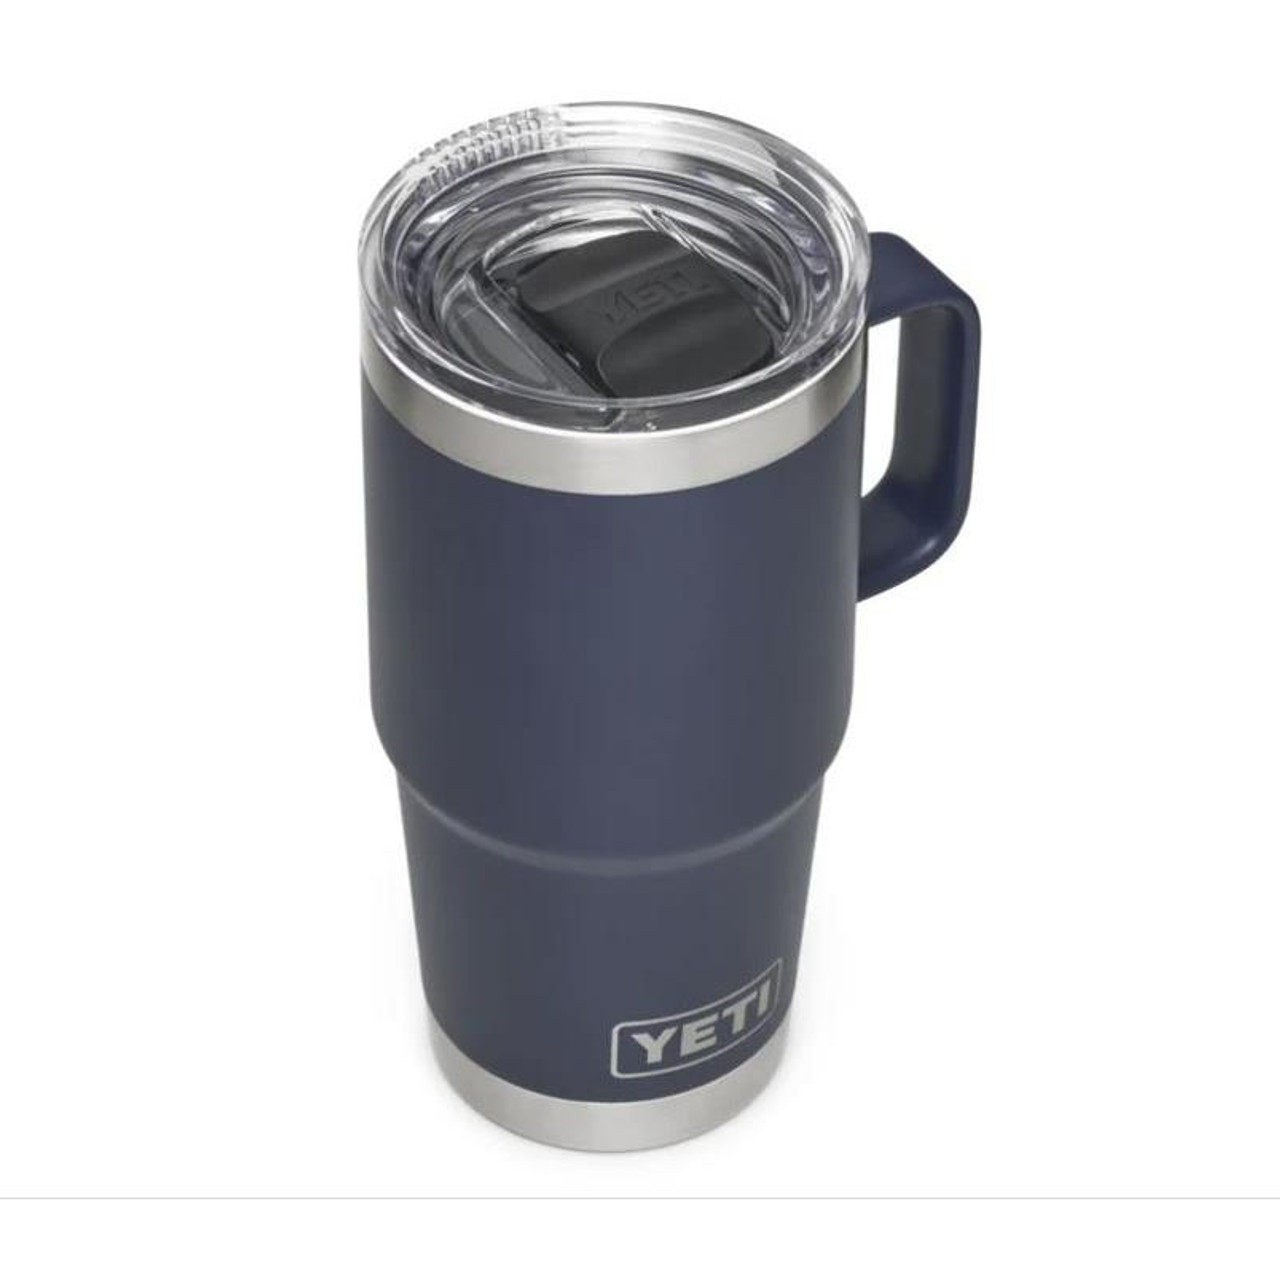 YETI Rambler 30 oz Travel Mug with Stronghold Lid